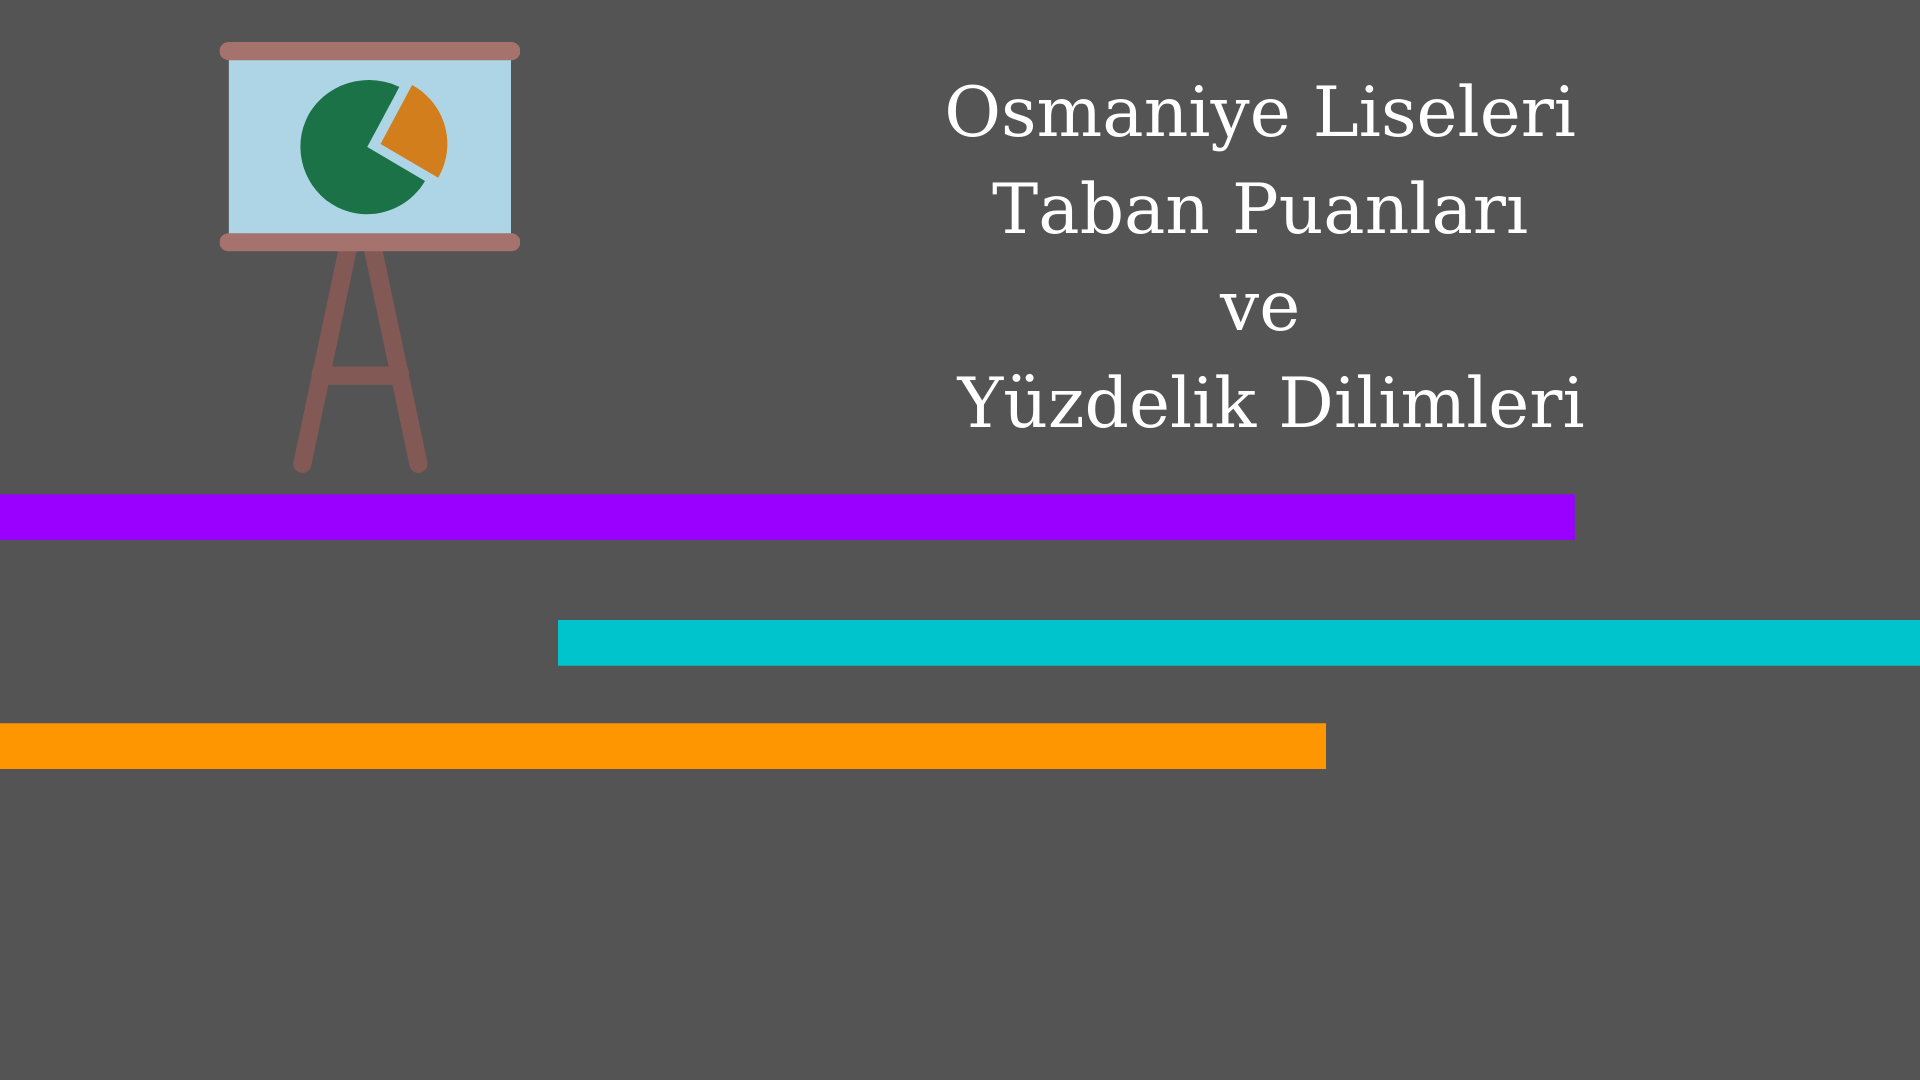 Osmaniye Liseleri Taban Puanları ve Yüzdelik Dilimleri 2021